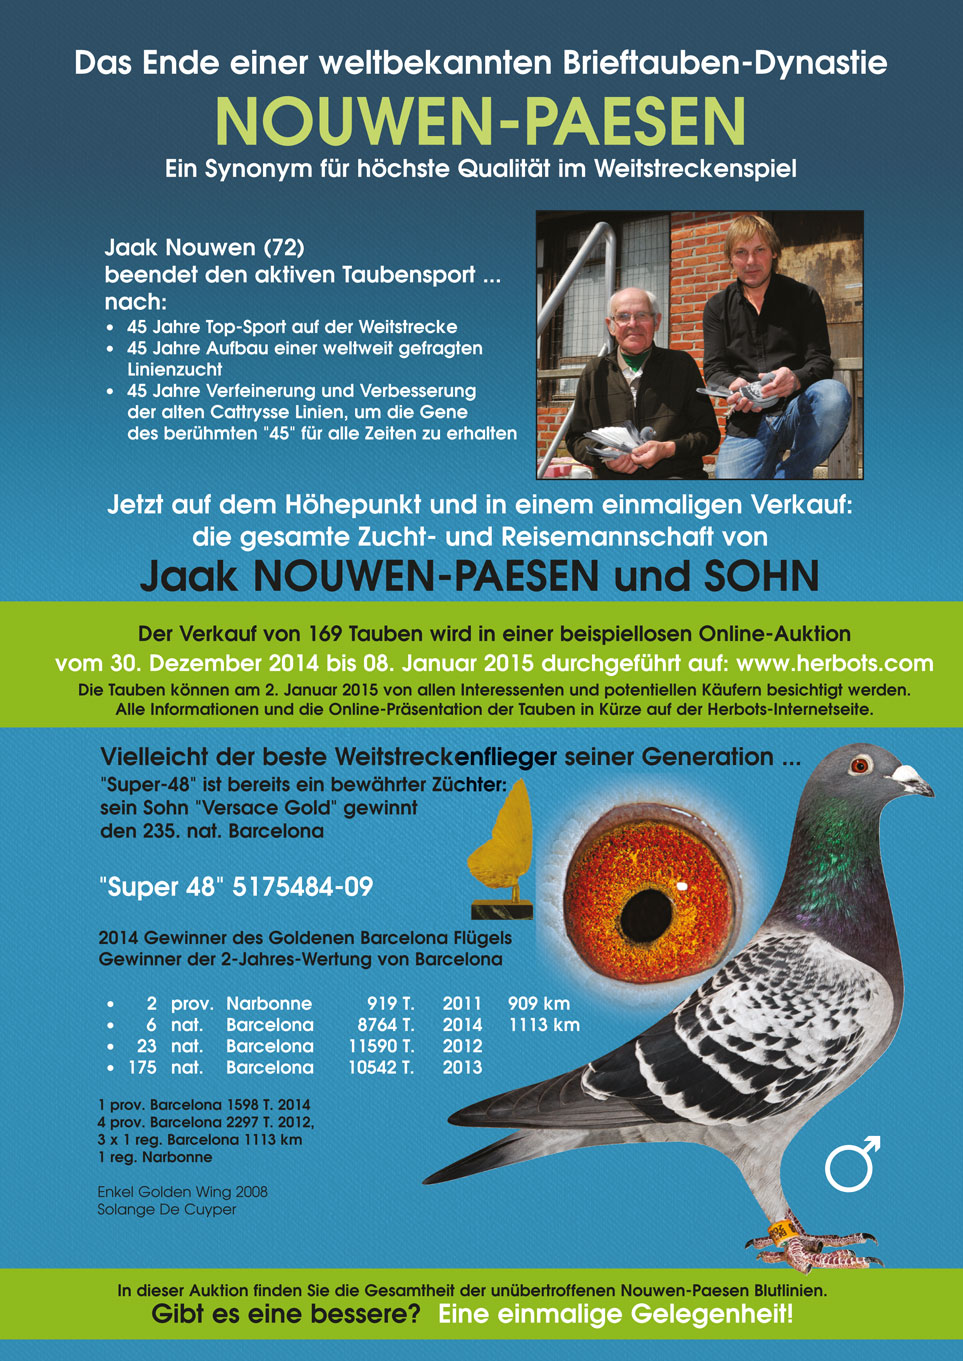 Nouwen-PAESEN - la fin d'un monde célèbre pigeons Dynasty